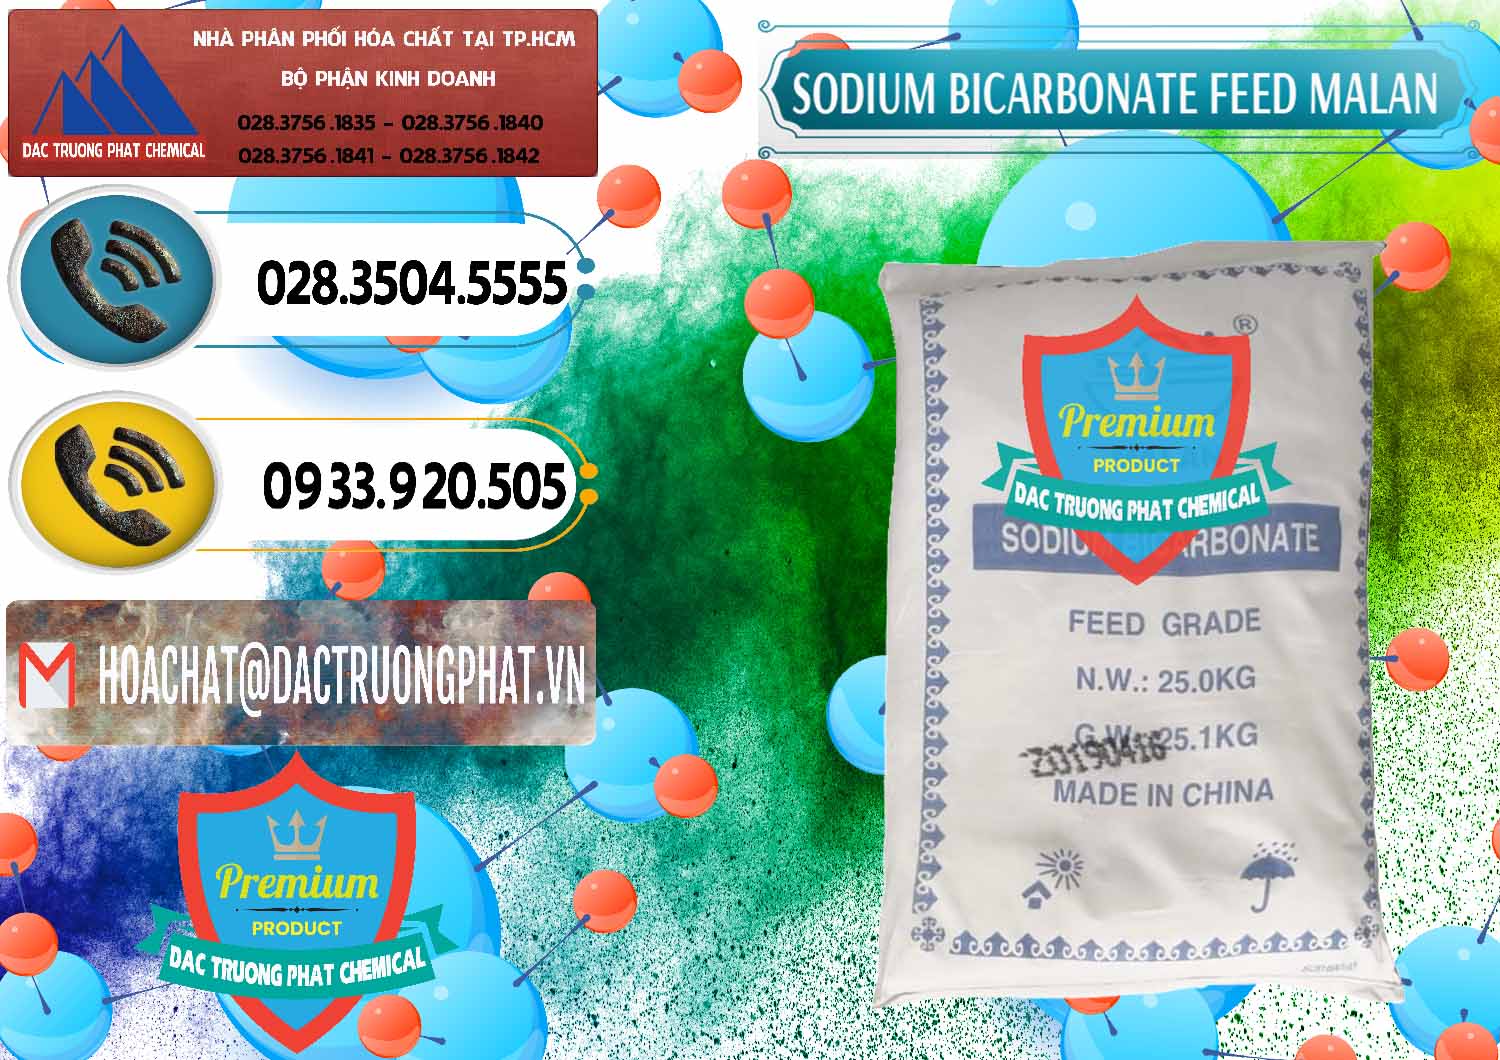 Công ty cung ứng và bán Sodium Bicarbonate – Bicar NaHCO3 Feed Grade Malan Trung Quốc China - 0262 - Cty nhập khẩu _ cung cấp hóa chất tại TP.HCM - hoachatdetnhuom.vn